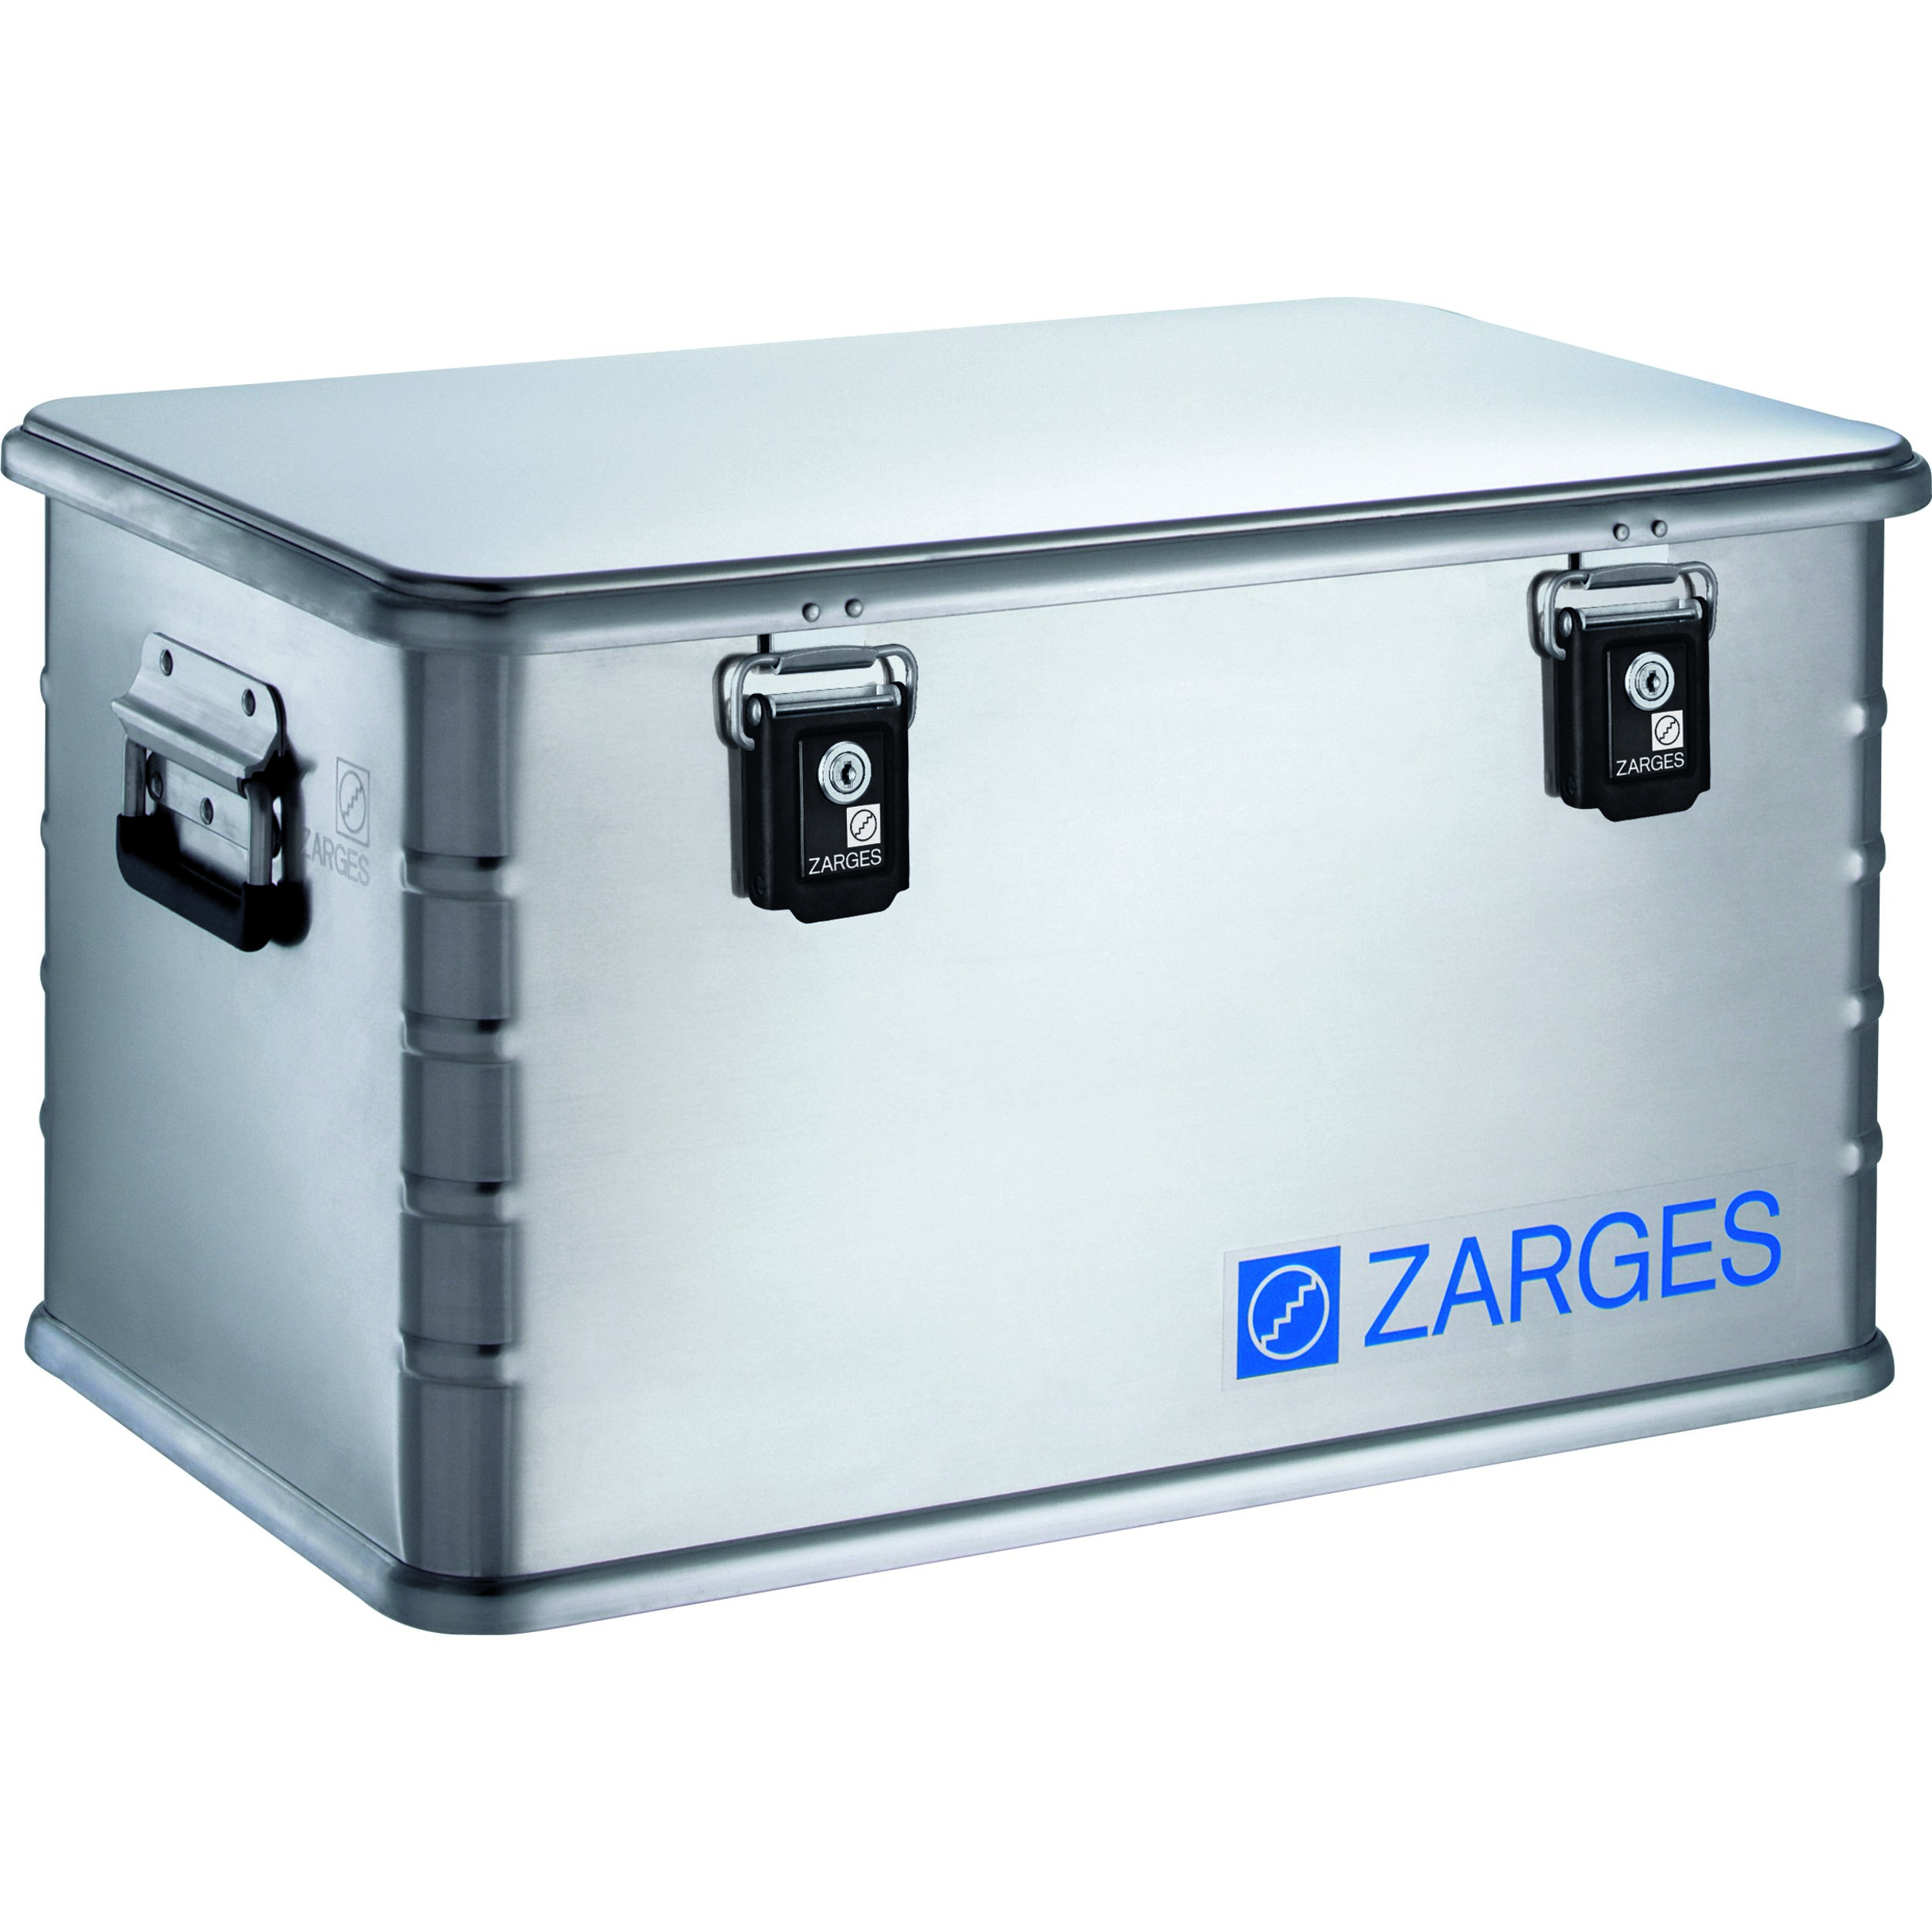 Zarges Minibox-Plus